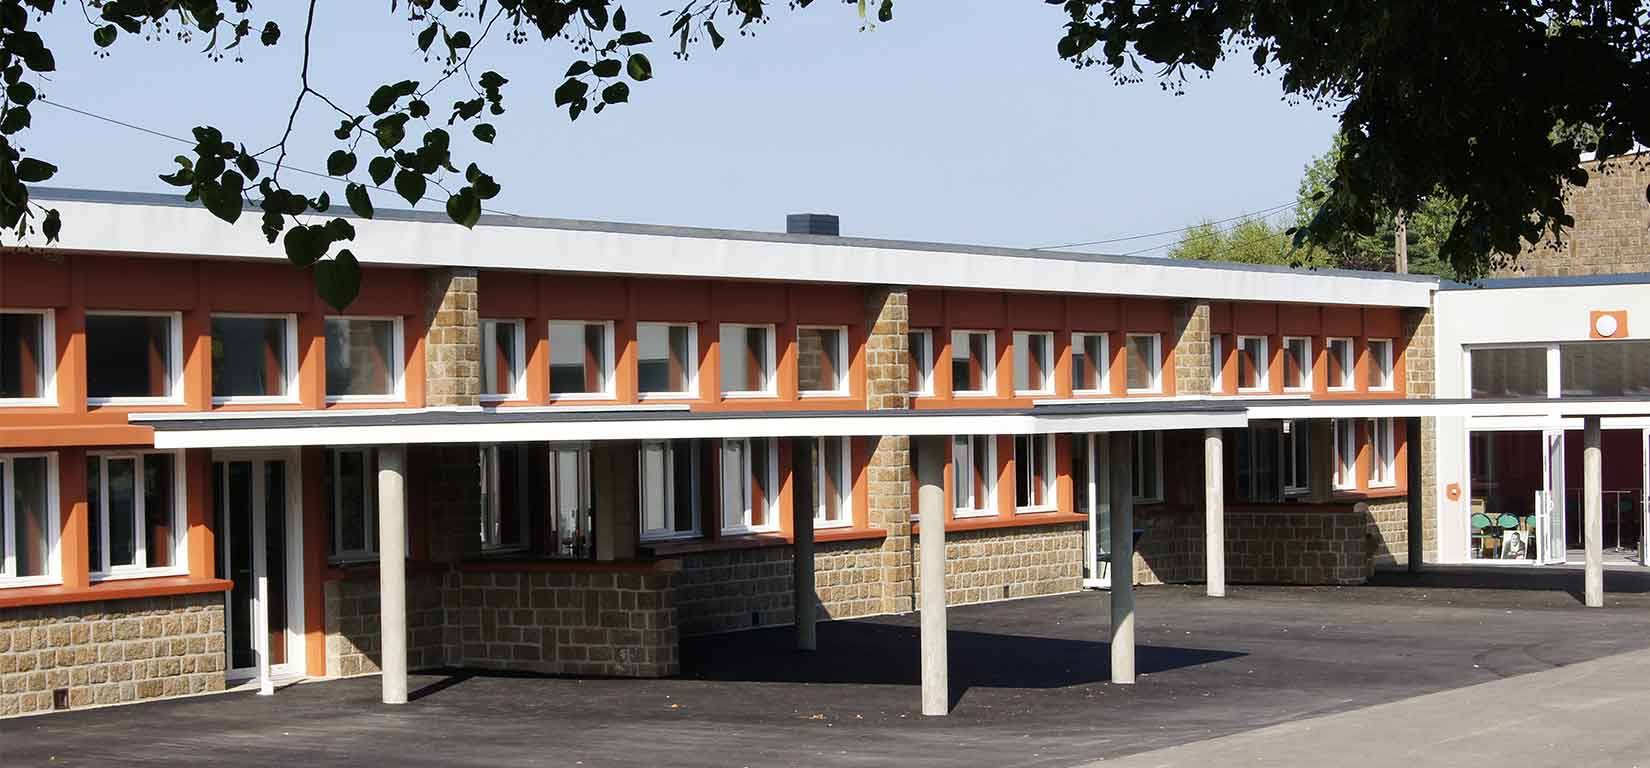 Maison des solidarités Vire Normandie bâtiment de l'ancienne école Paul Nicole